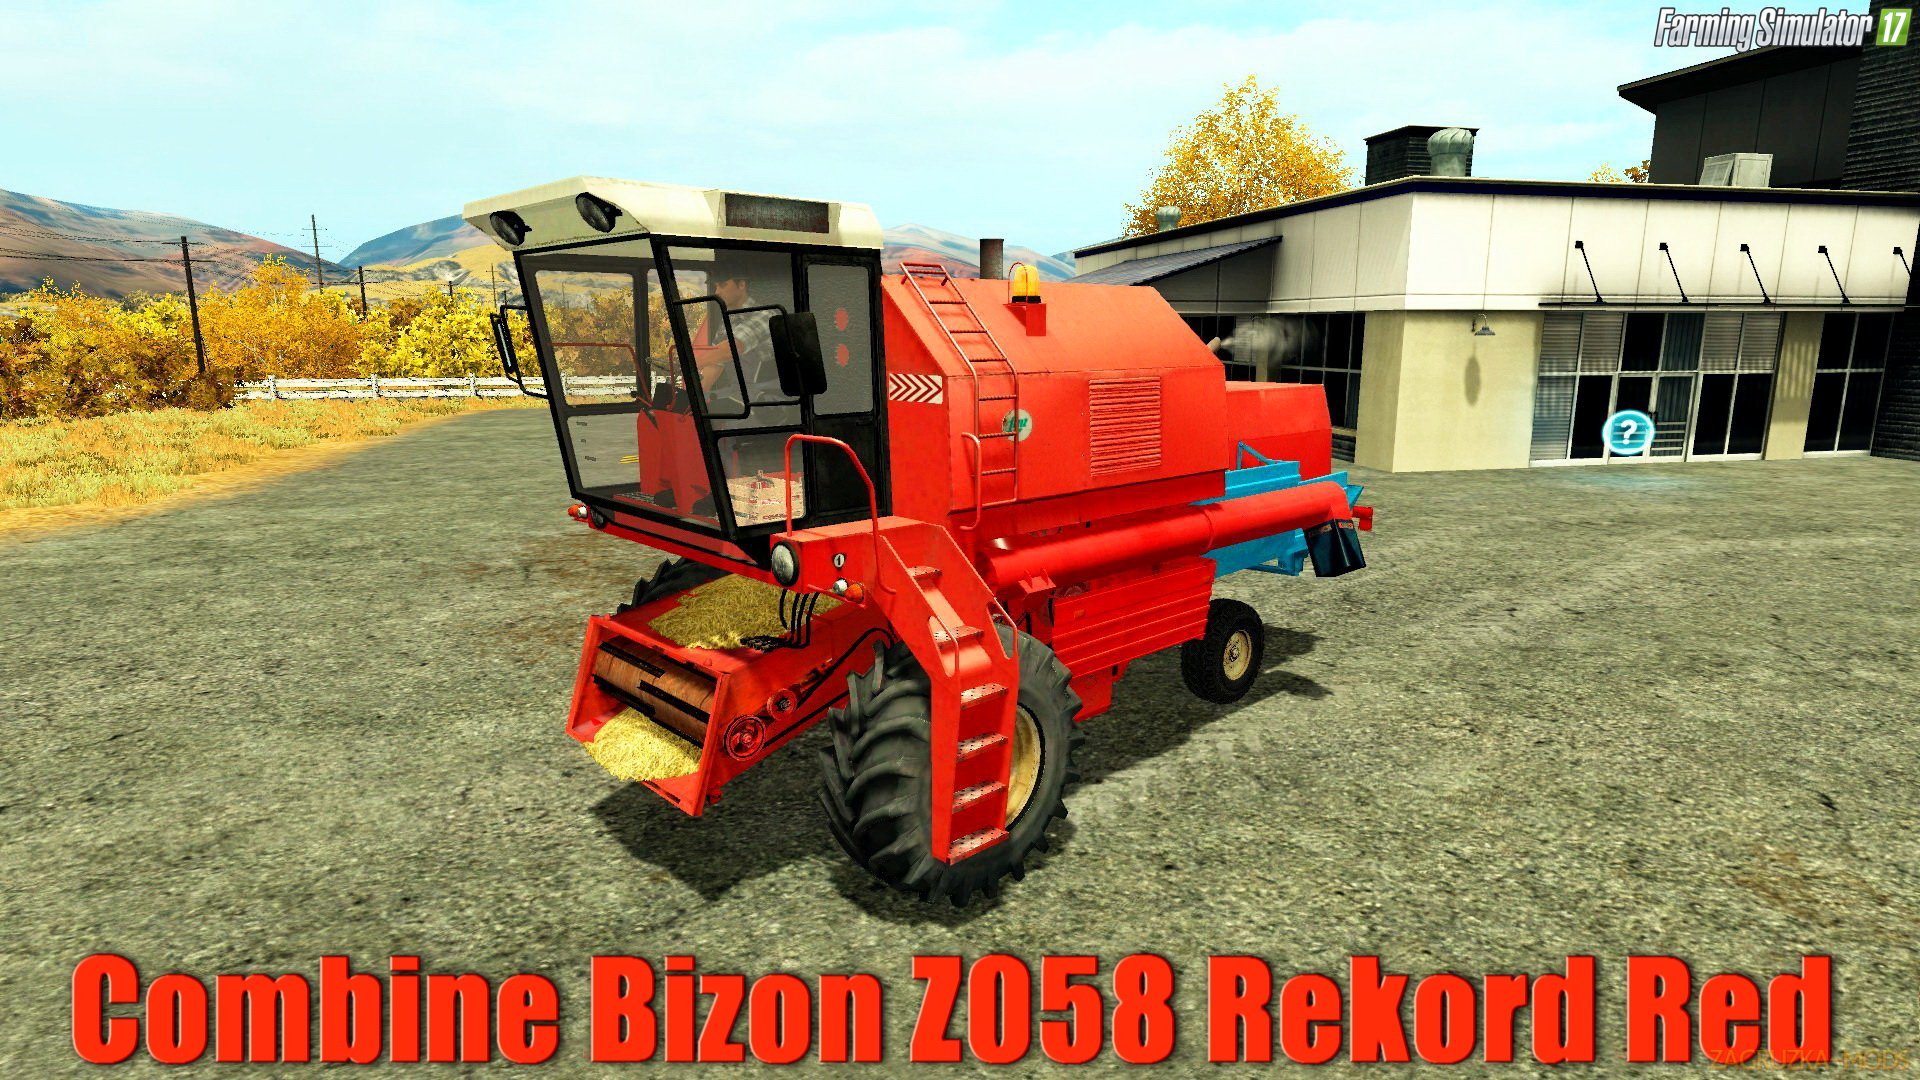 Bizon Z058 Rekord Red v2.0 for FS 17